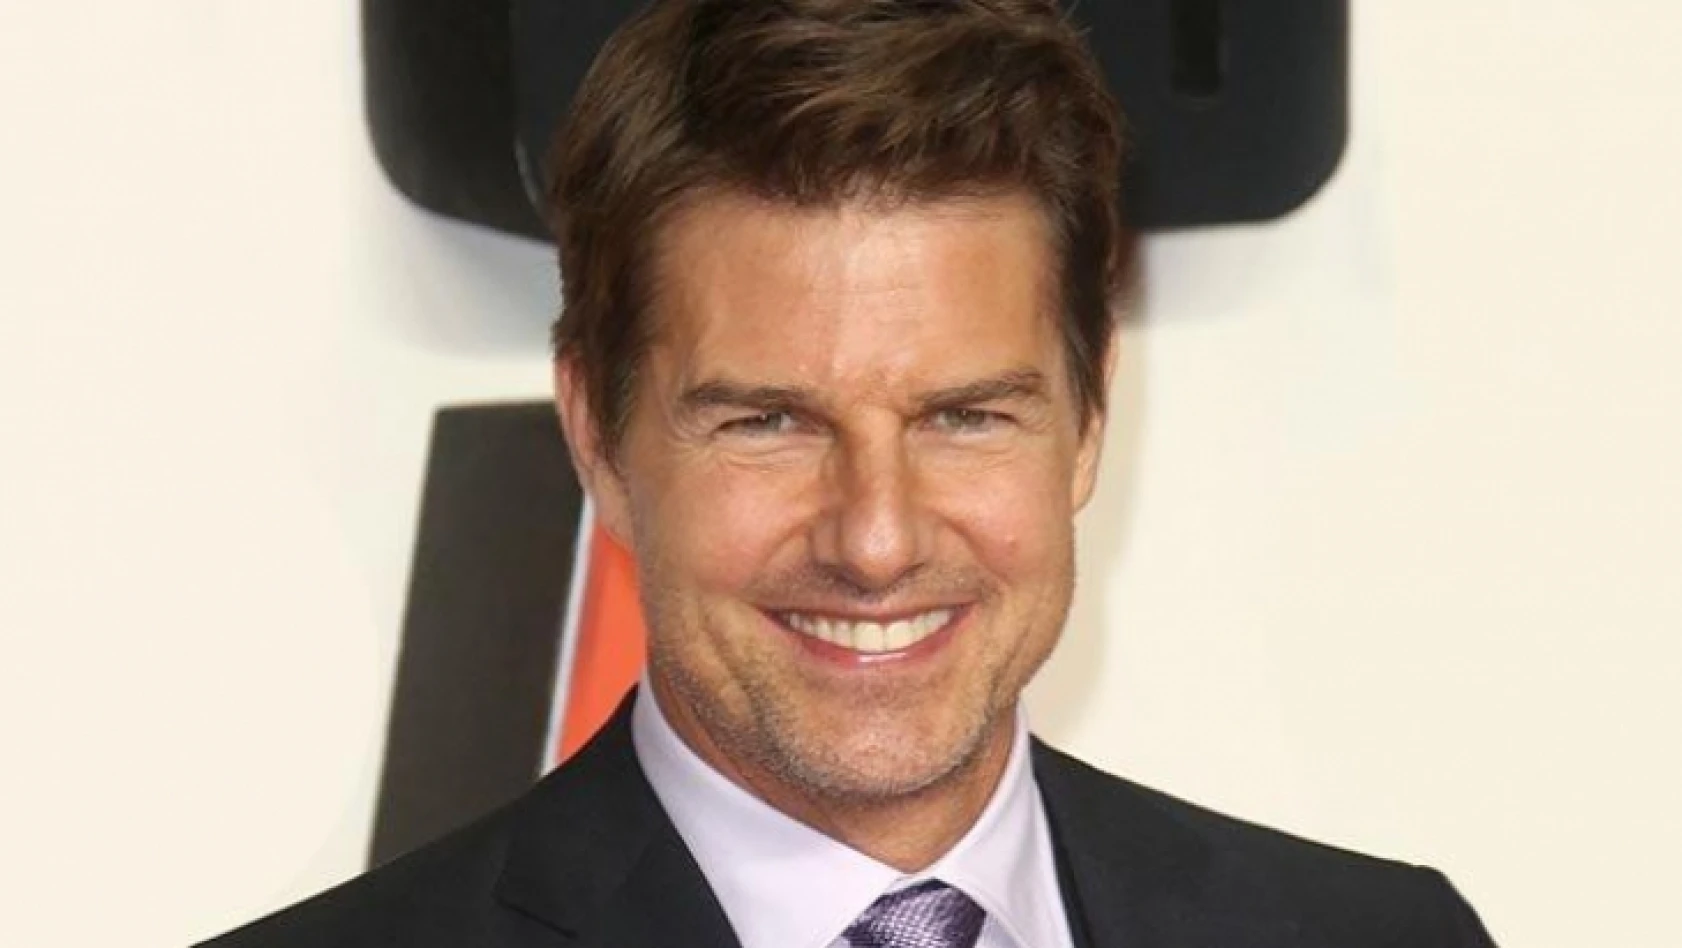 Şoke eden iddiası! Tom Cruise tarikat lideri mi oluyor?